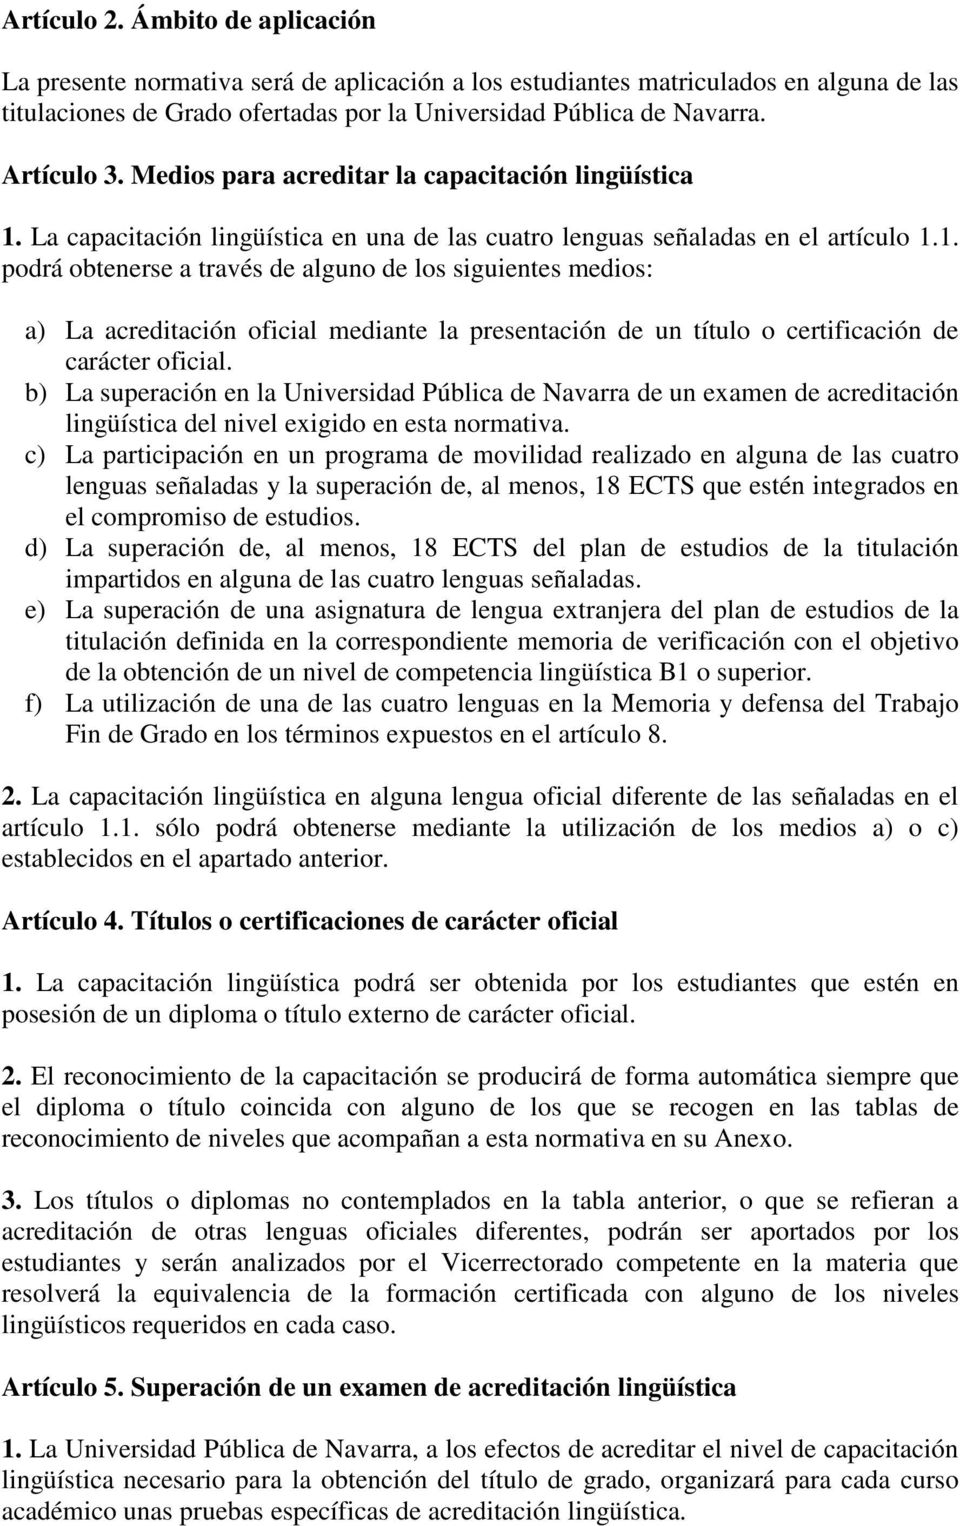 La capacitación lingüística en una de las cuatro lenguas señaladas en el artículo 1.